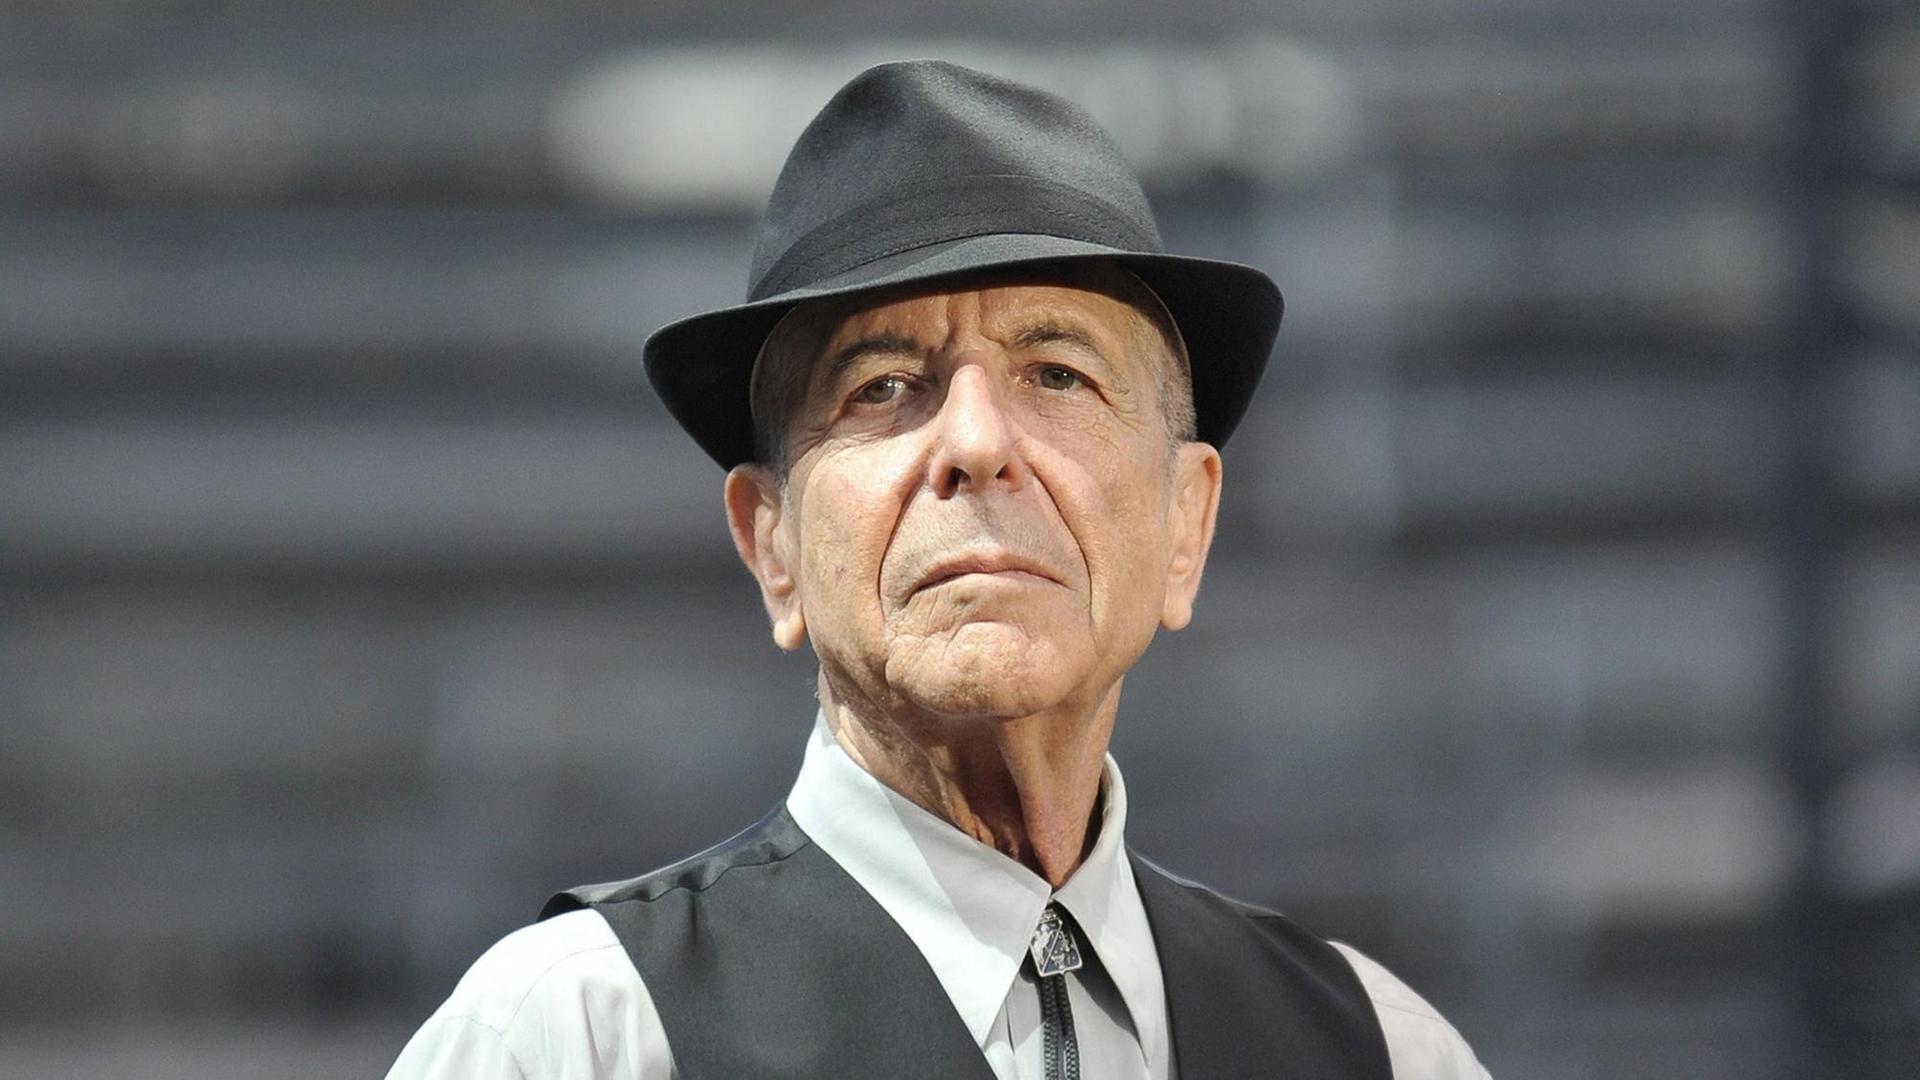 Leonard Cohen trägt ein helles Hemd, darüber eine dunkle Weste, außerdem einen Hut und schaut in die Kamera.